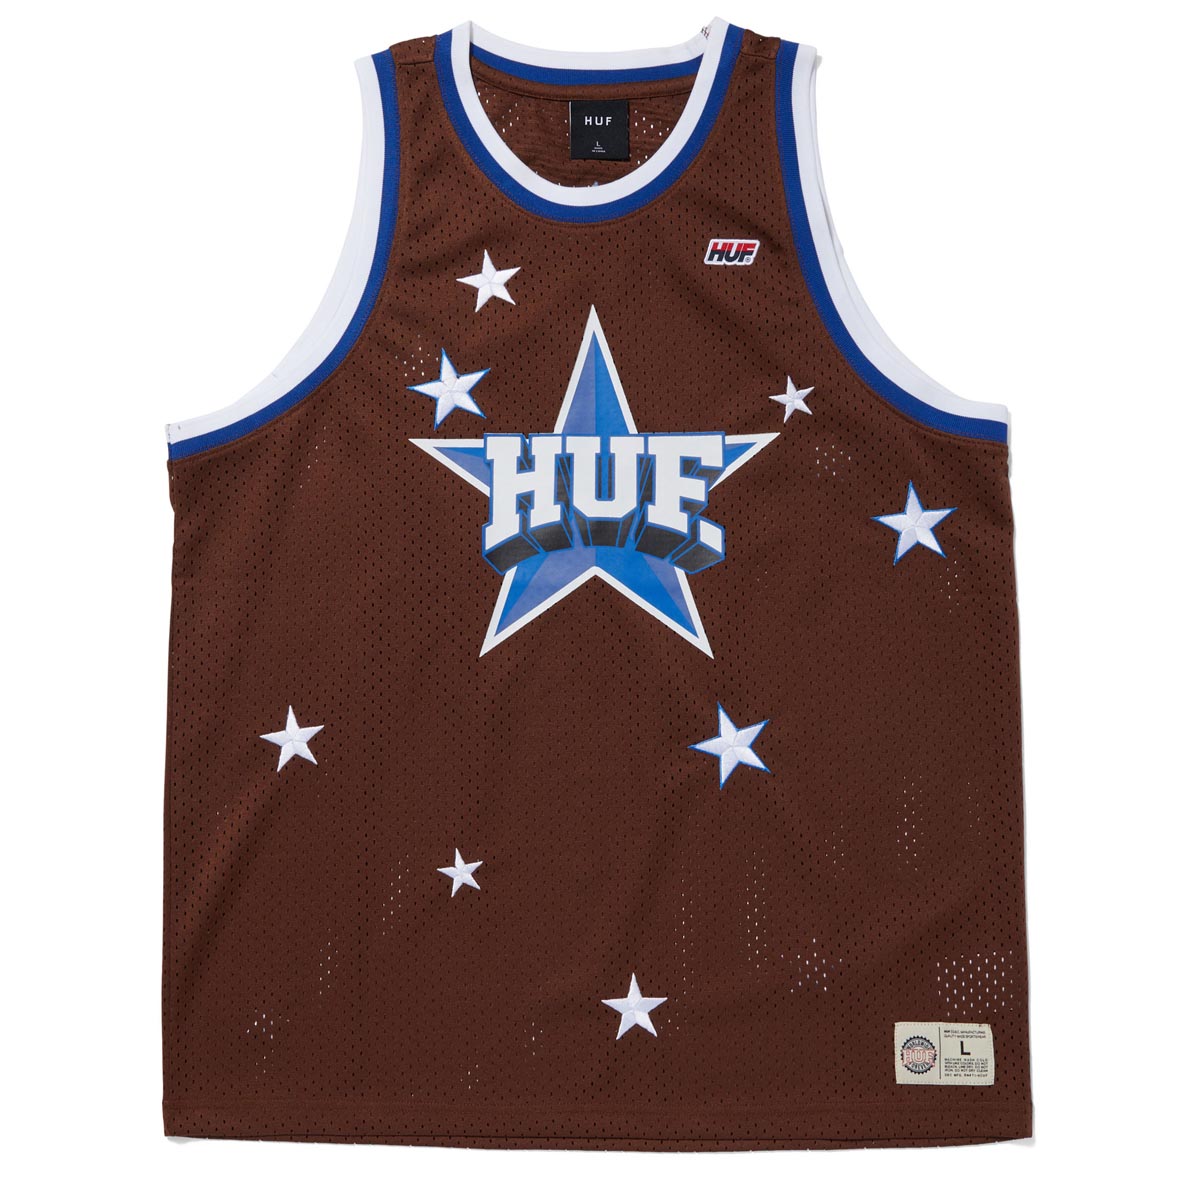 HUF All Star Basketball Jersey - Brown image 1